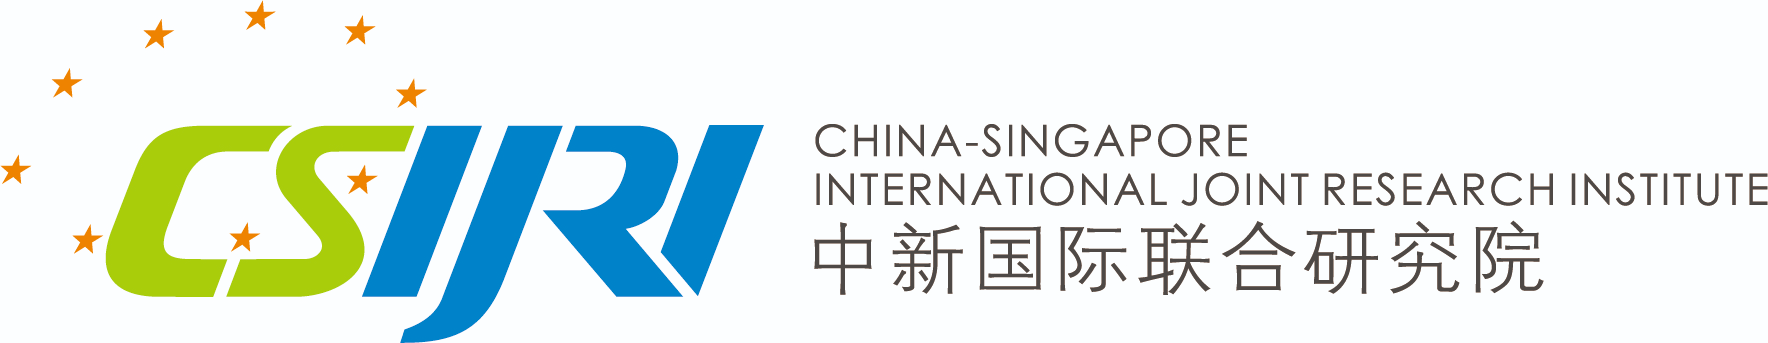 中新国际联合研究院-logo.png